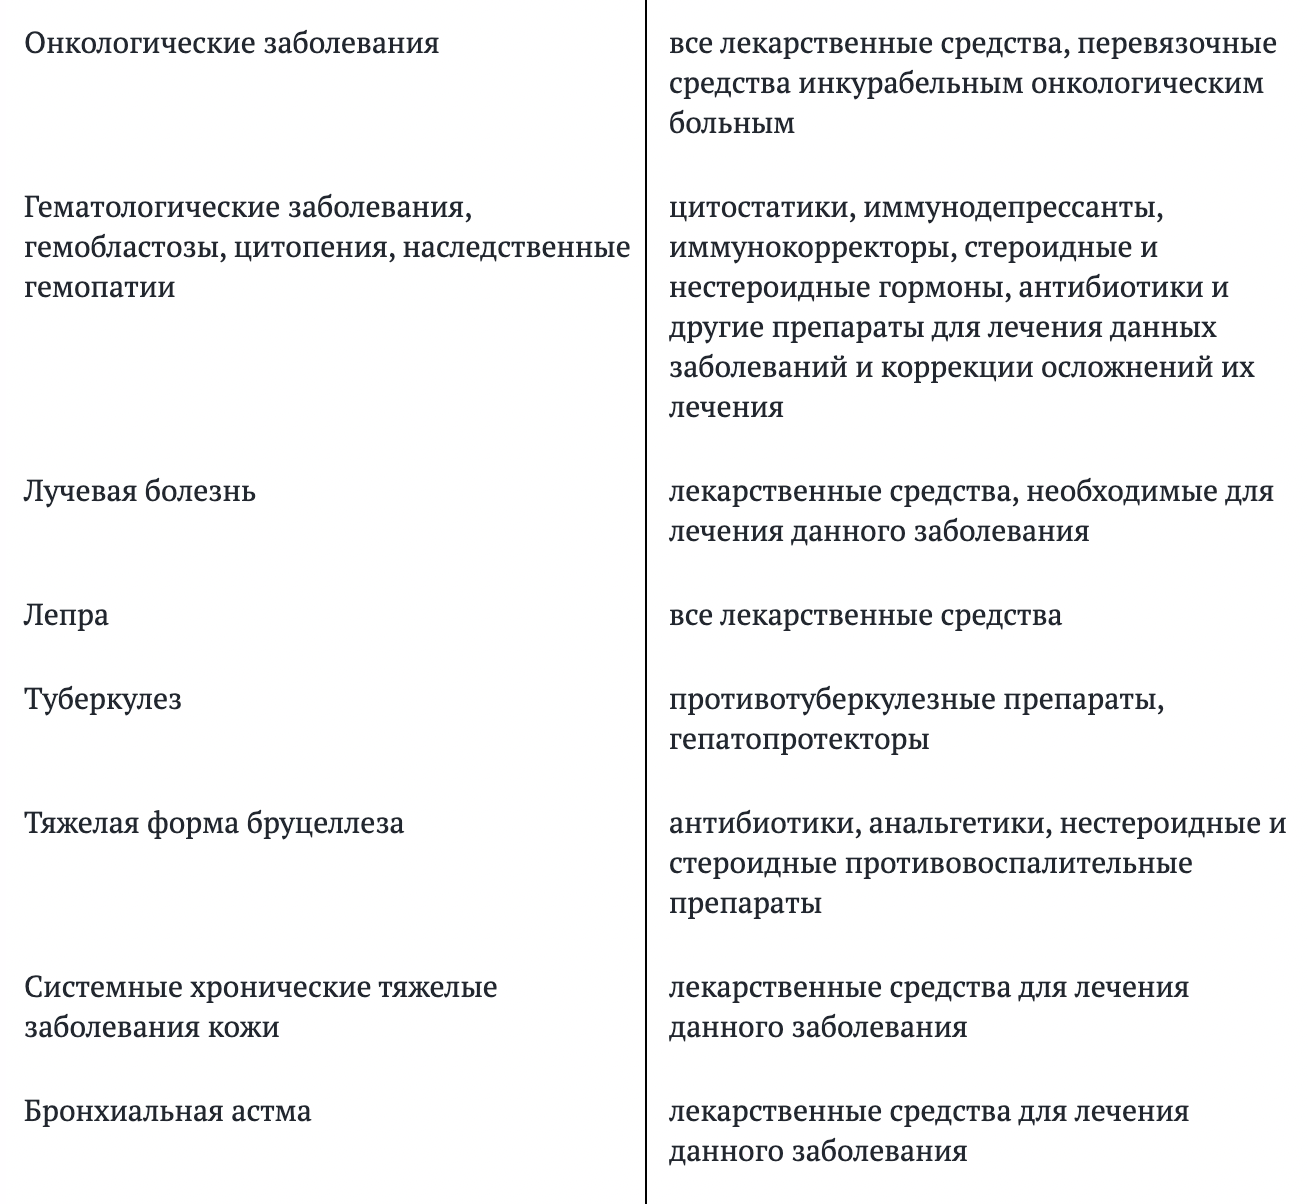 В столбике справа важное уточнение: какие именно лекарства государство готово оплачивать пациенту. Источник: iv.garant.ru